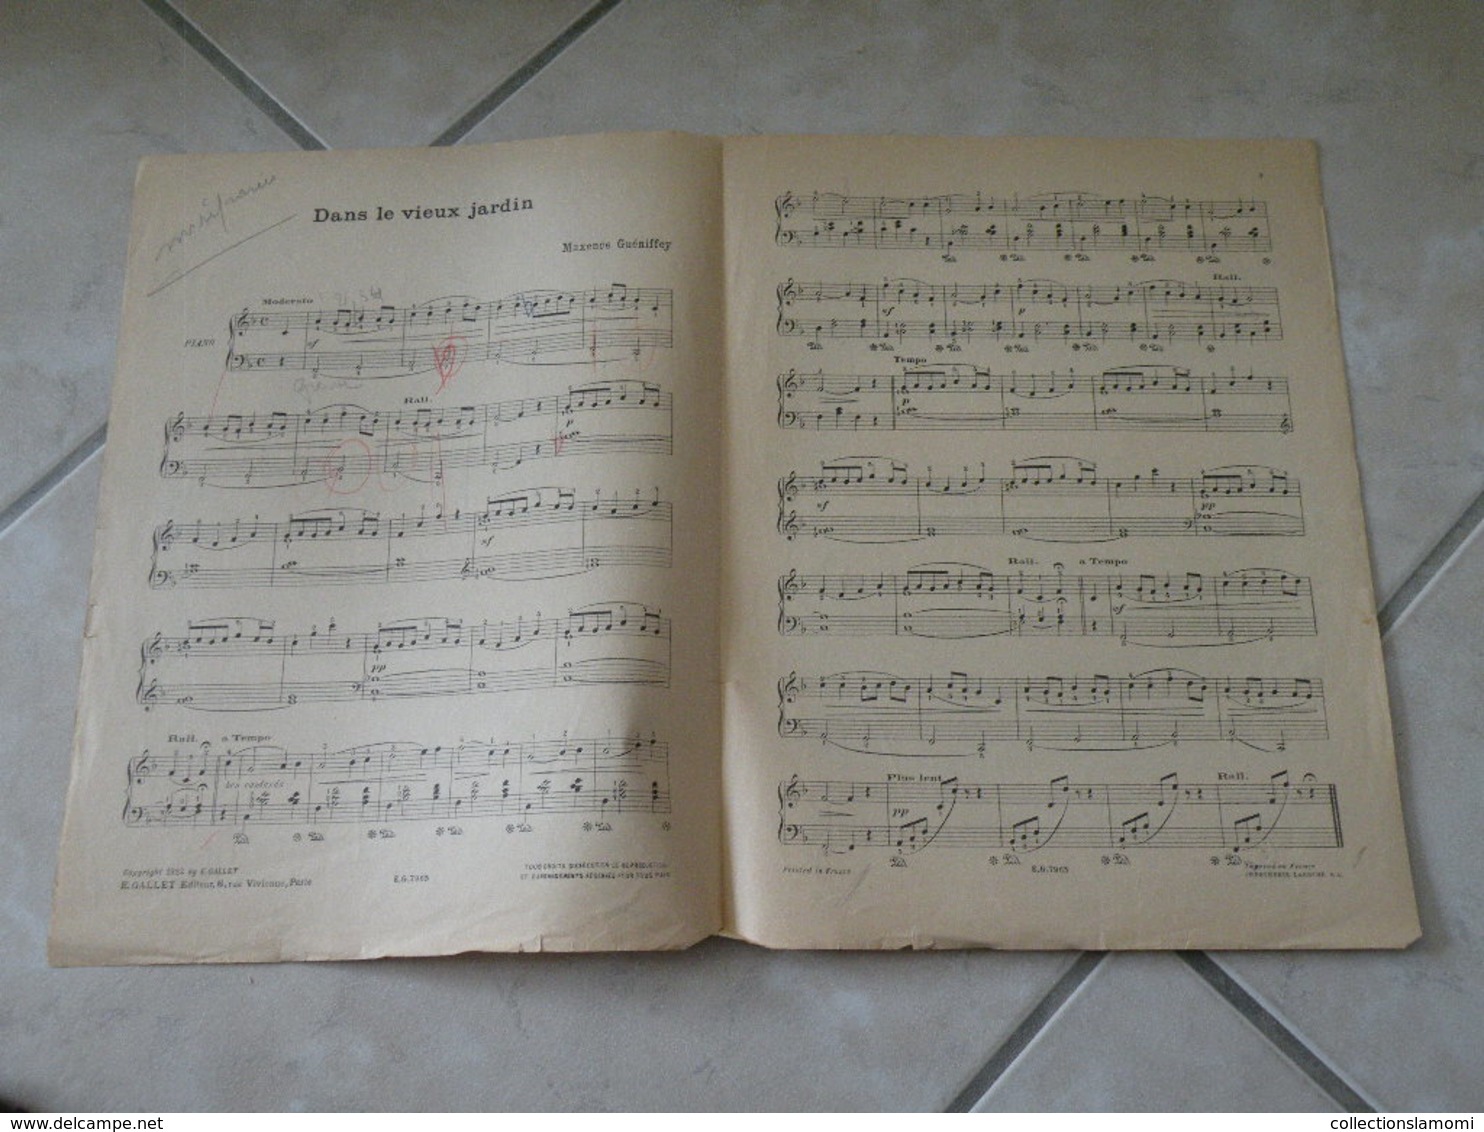 Dans Le Vieux Jardin & Trotte Petit ânon -(Musique Maxence Guéniffey)- Partition (Piano) 1922 - Strumenti A Tastiera